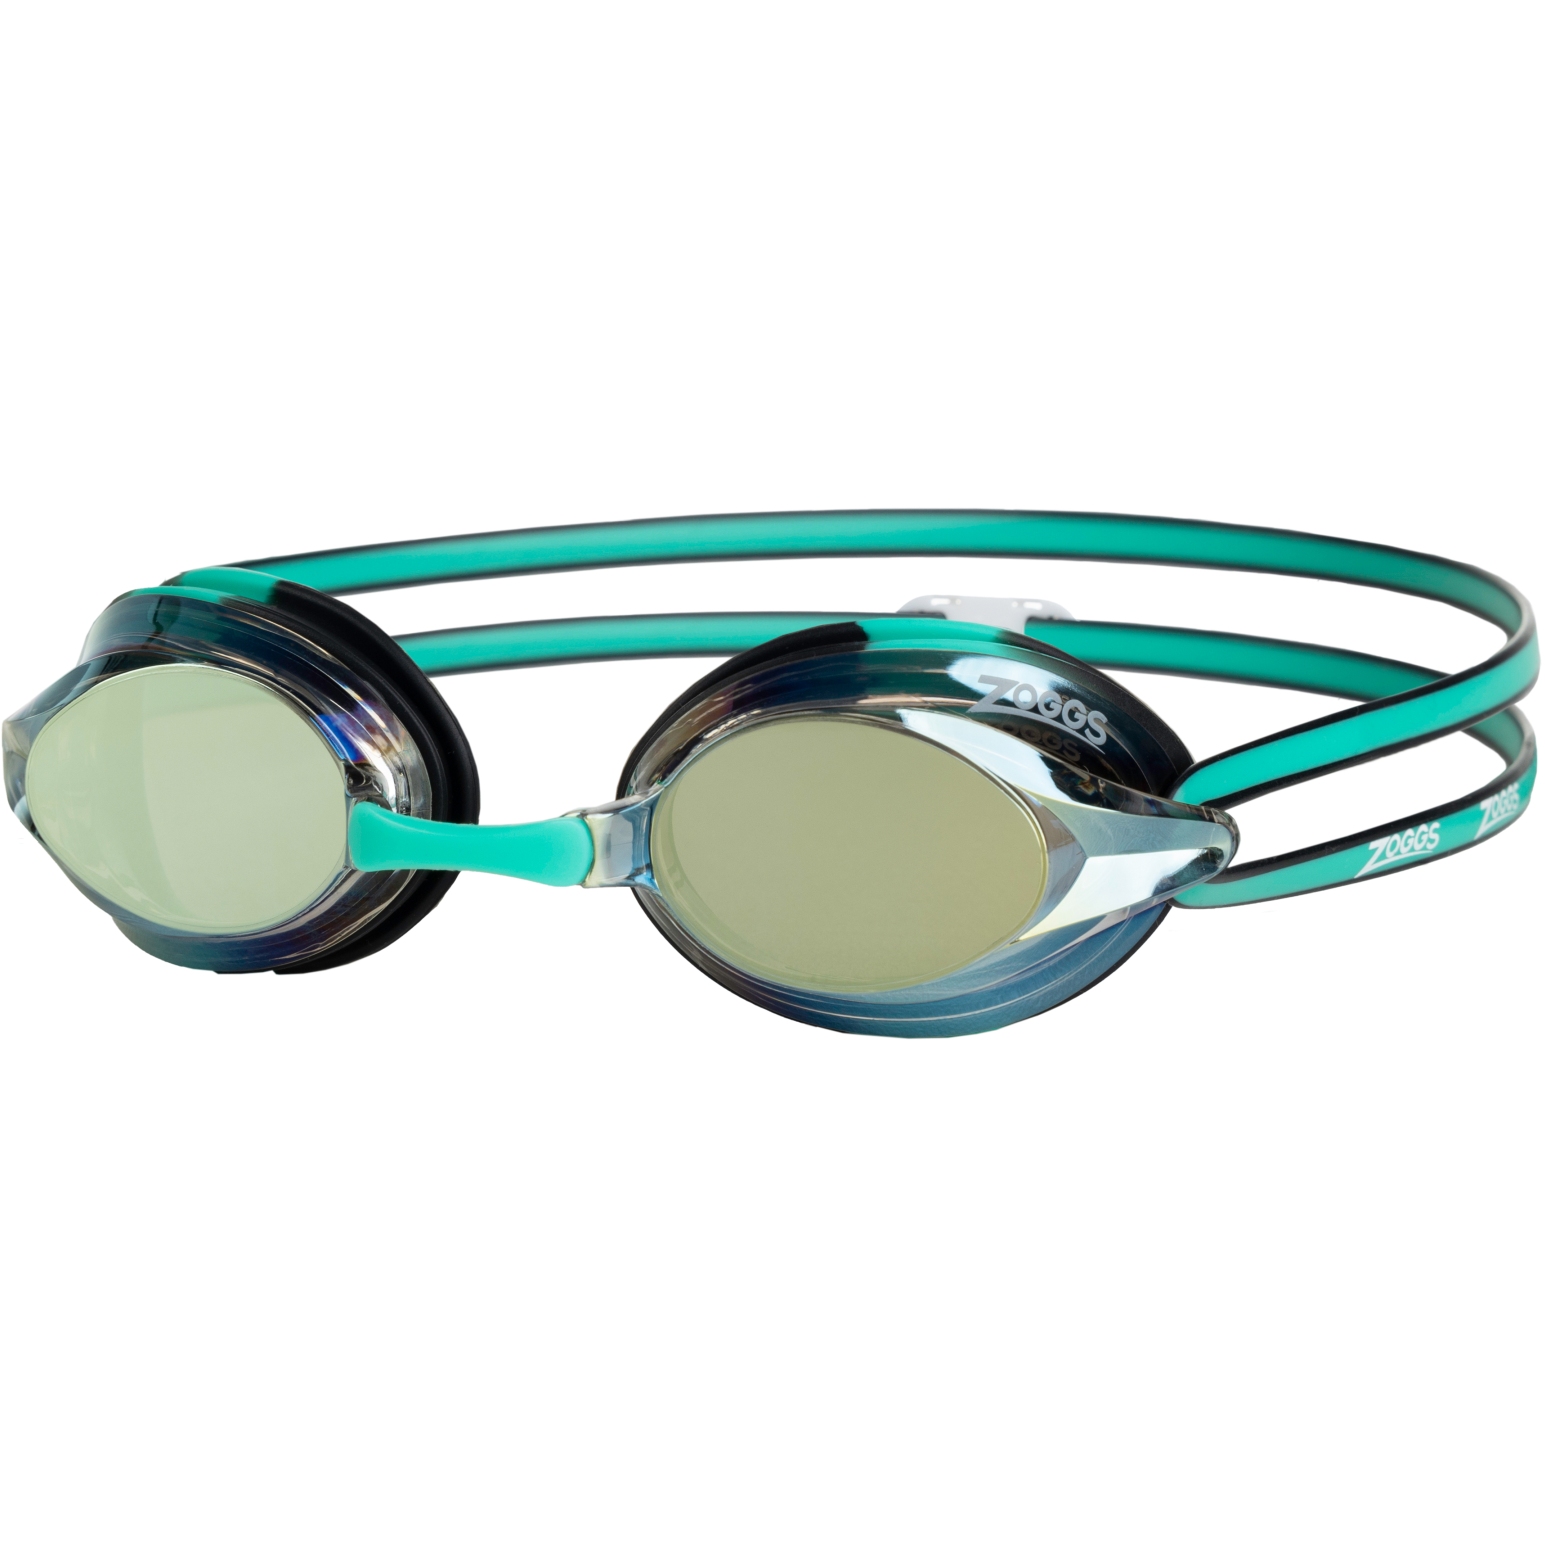 Produktbild von Zoggs Racer Titanium Schwimmbrille - Mirror Gold Lenses - Green/Black